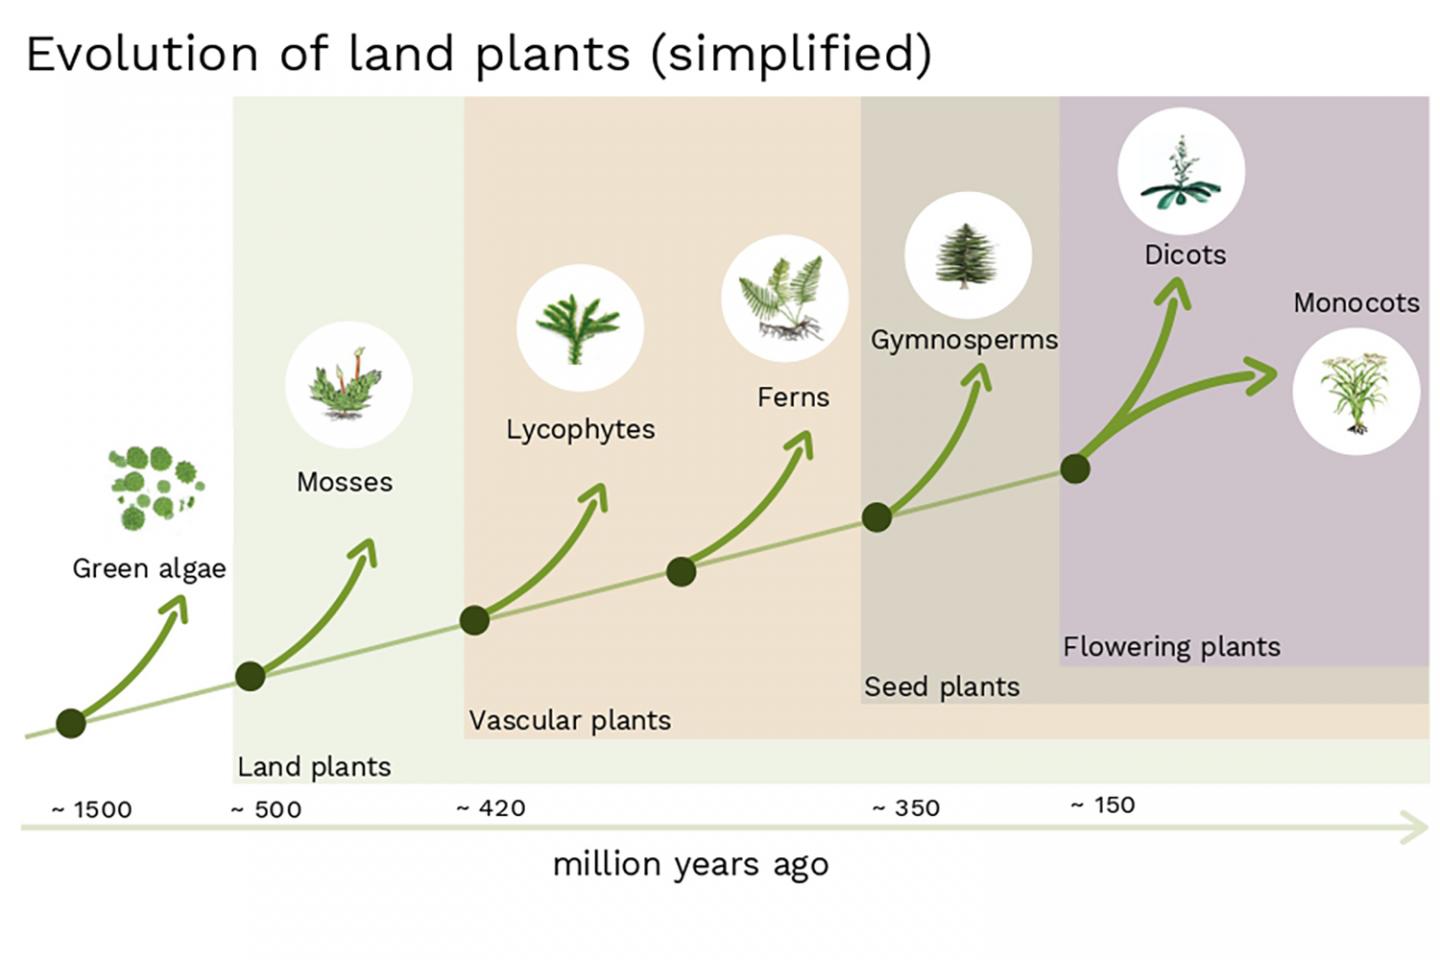 Evolution of Land Plants